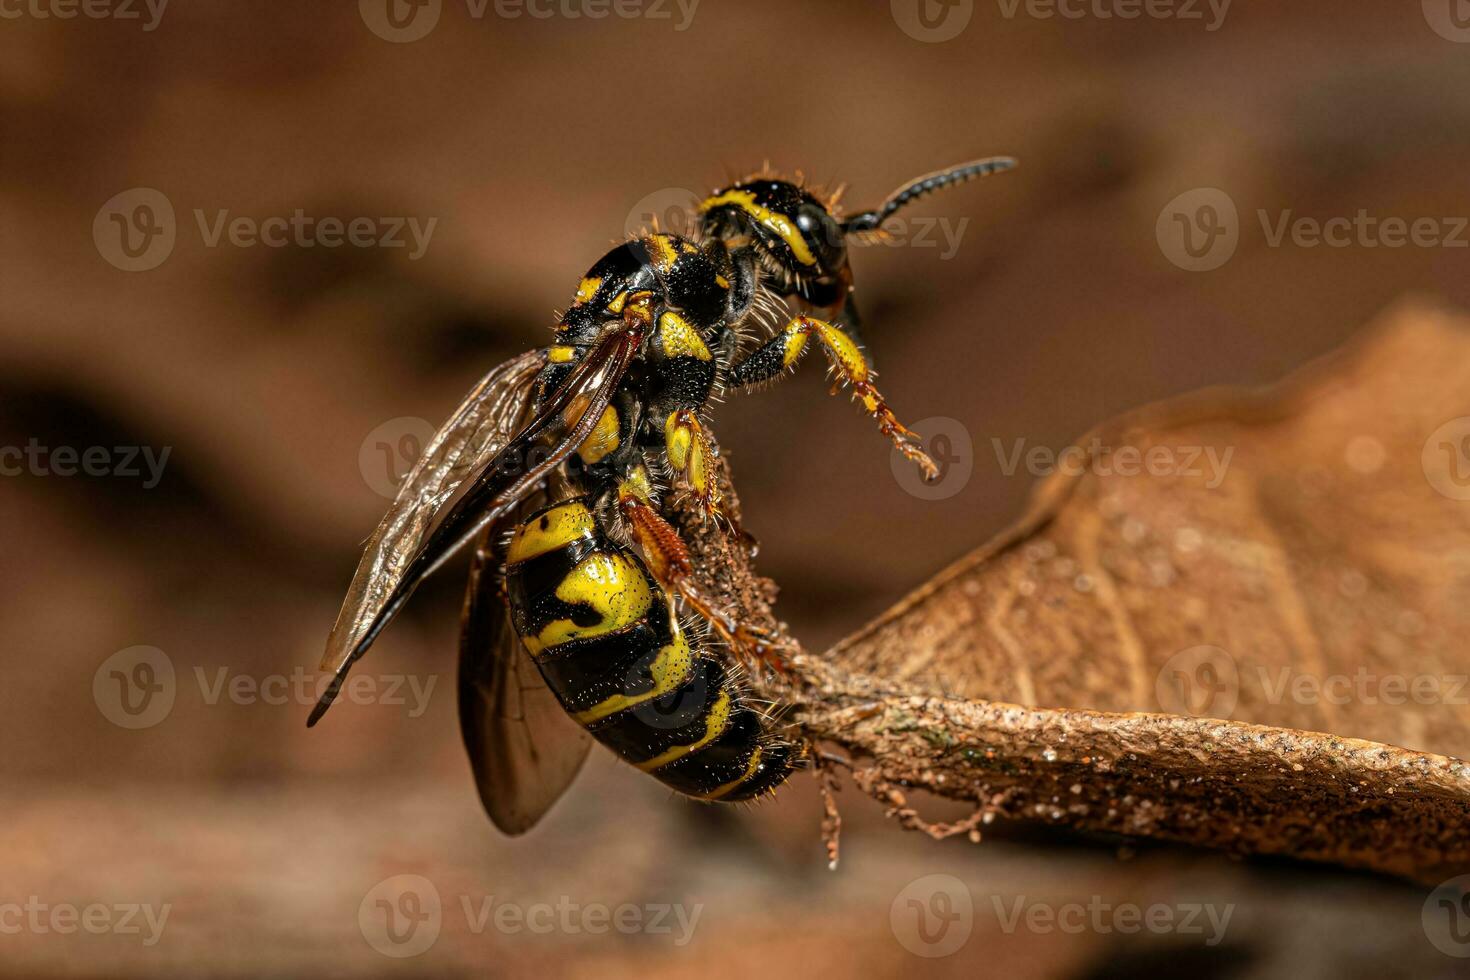 vespa tinnide fasciata del nuovo mondo adulta foto